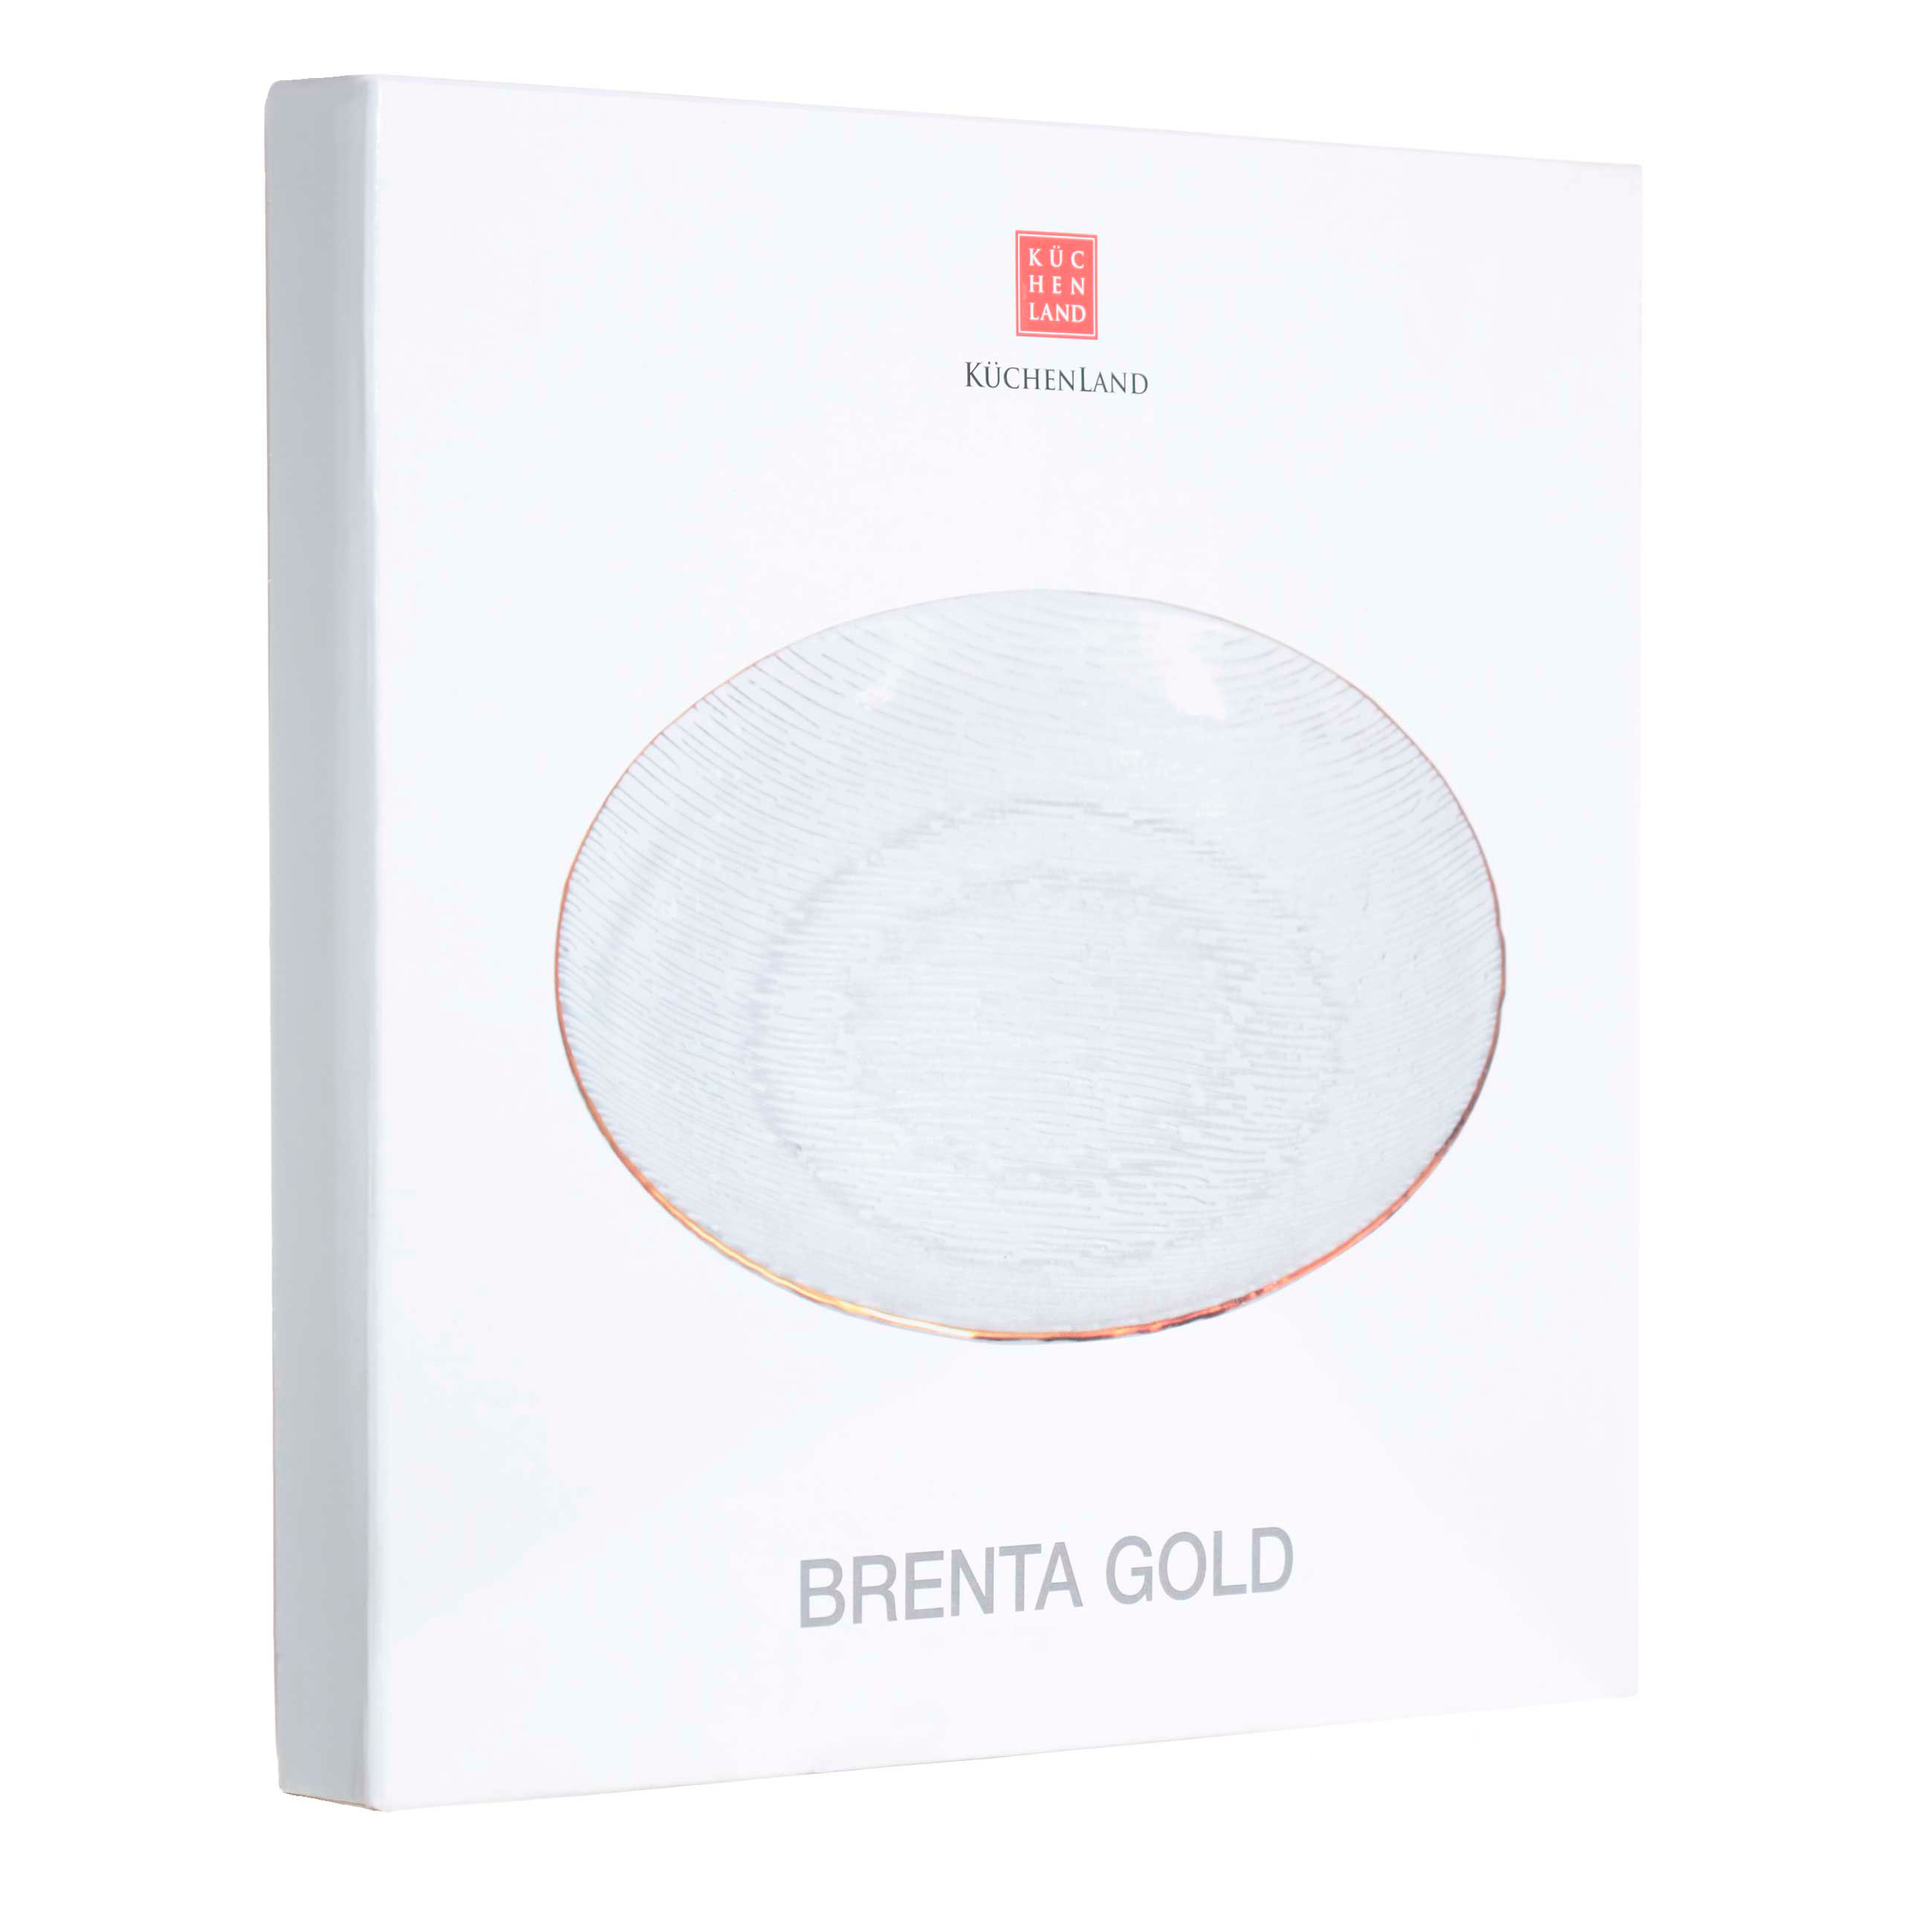 Тарелка десертная, 15 см, стекло, с золотистым кантом, Brenta gold